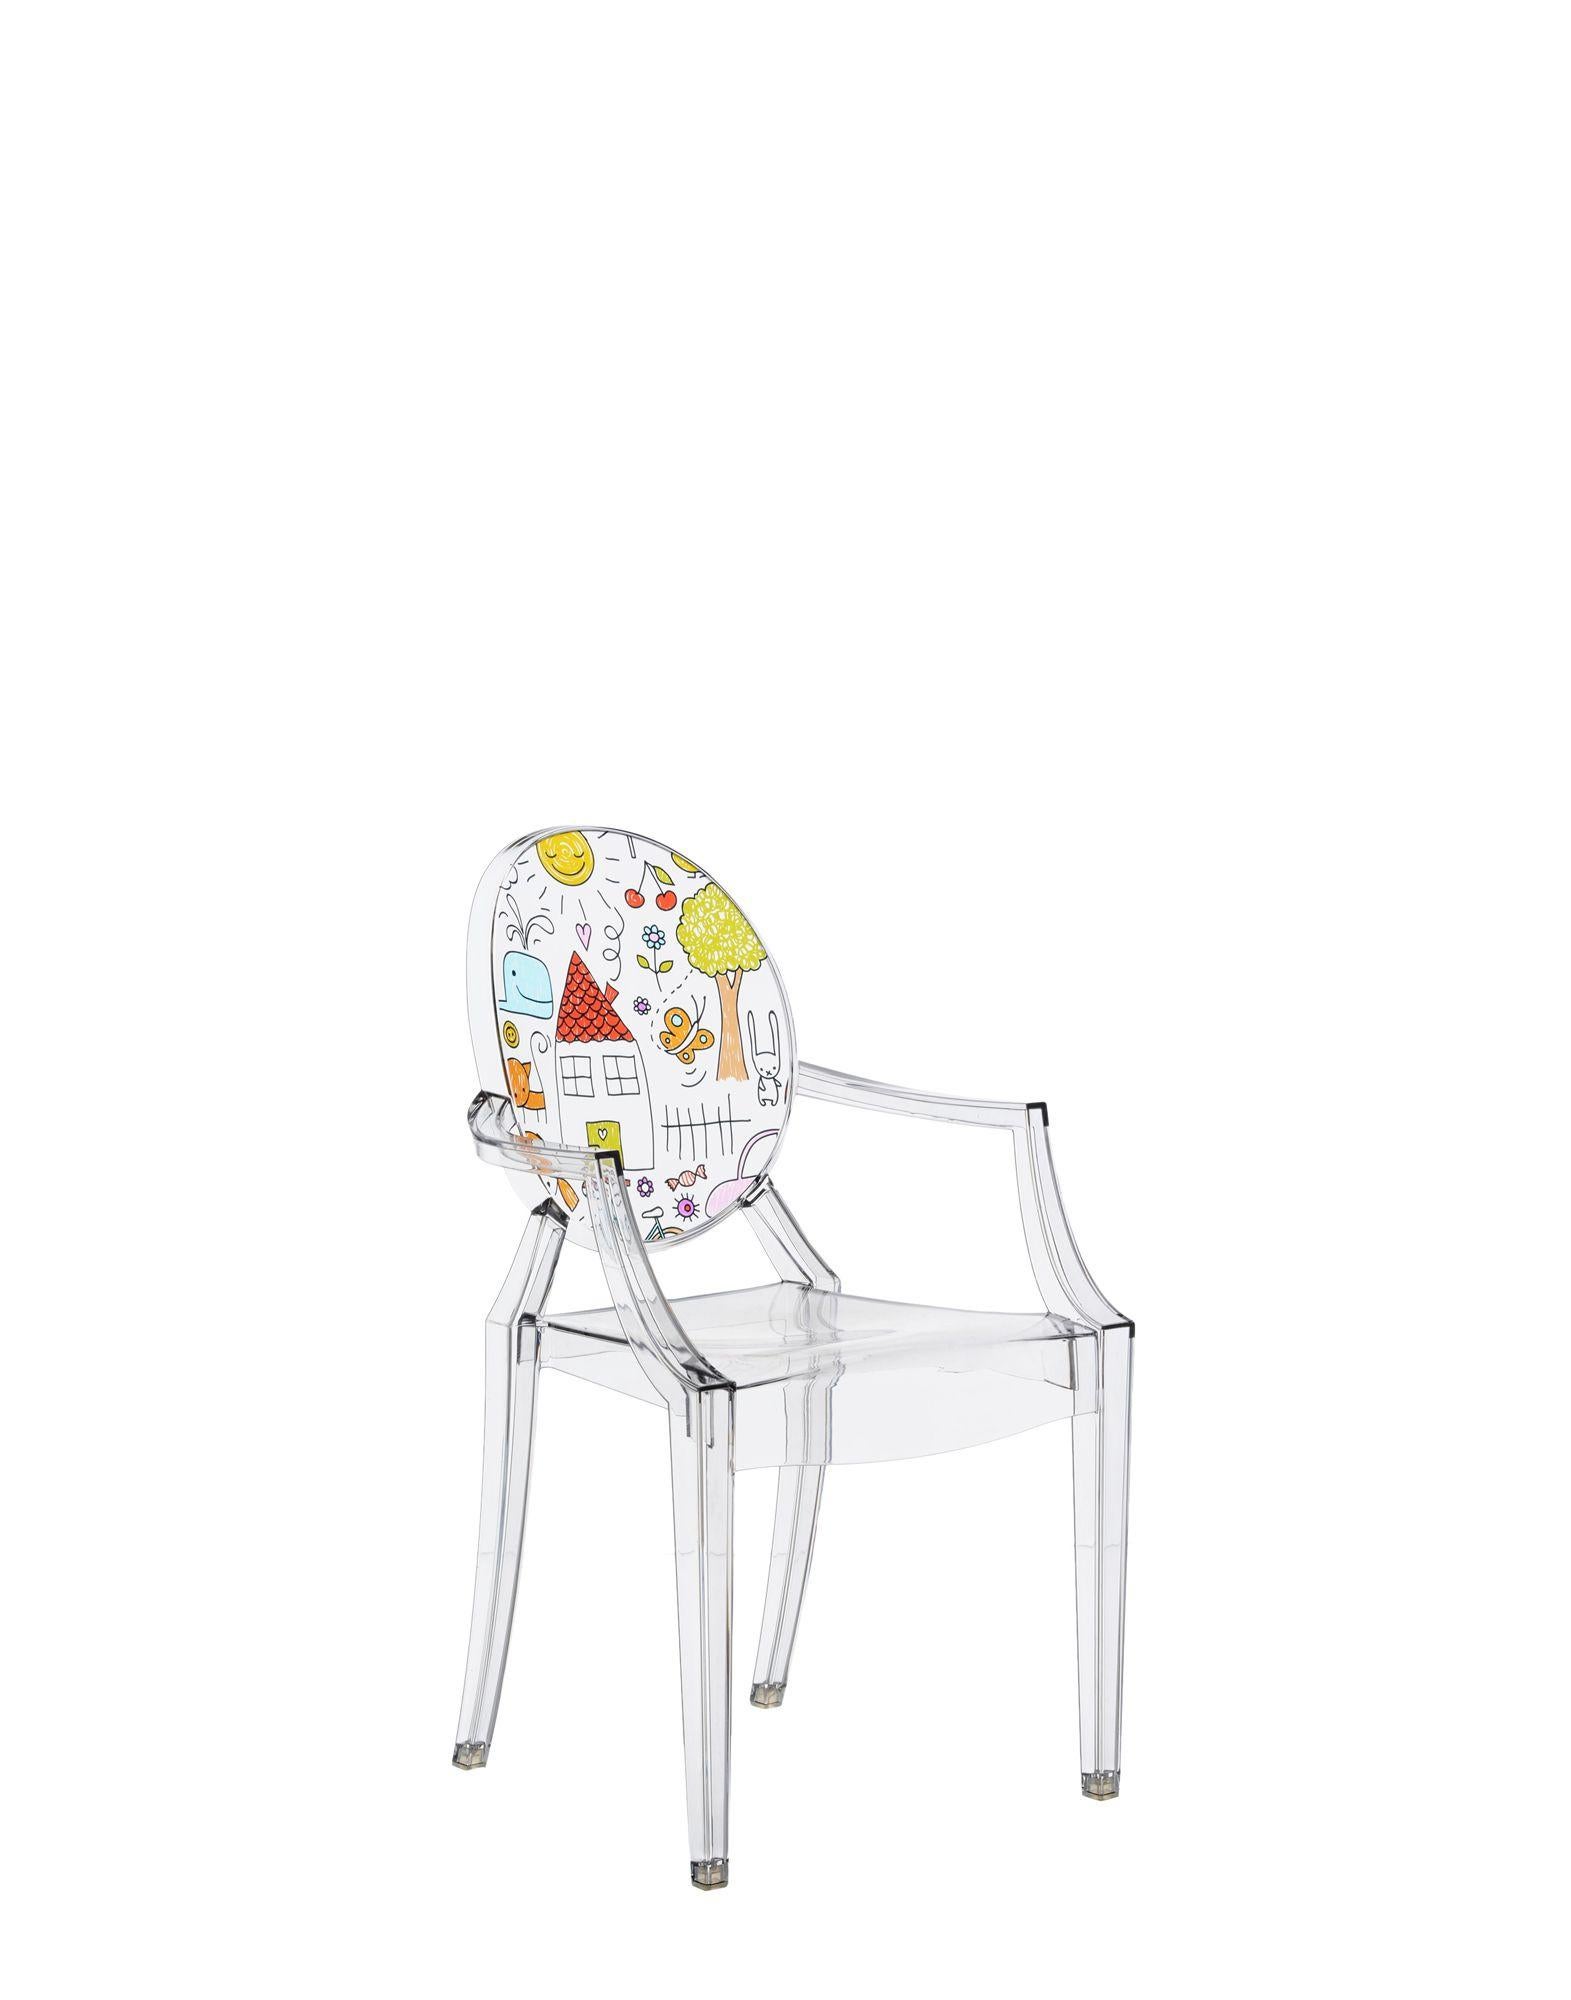 Die Miniaturversion eines der berühmtesten Designstühle ergänzt die Kartell Kids Linie in mehreren neuen Versionen. Der Lou Lou Ghost von Philippe Starck erhält neue und anpassbare Grafiken für die lustige Welt der Kinder.

Abmessungen: Höhe 24,75